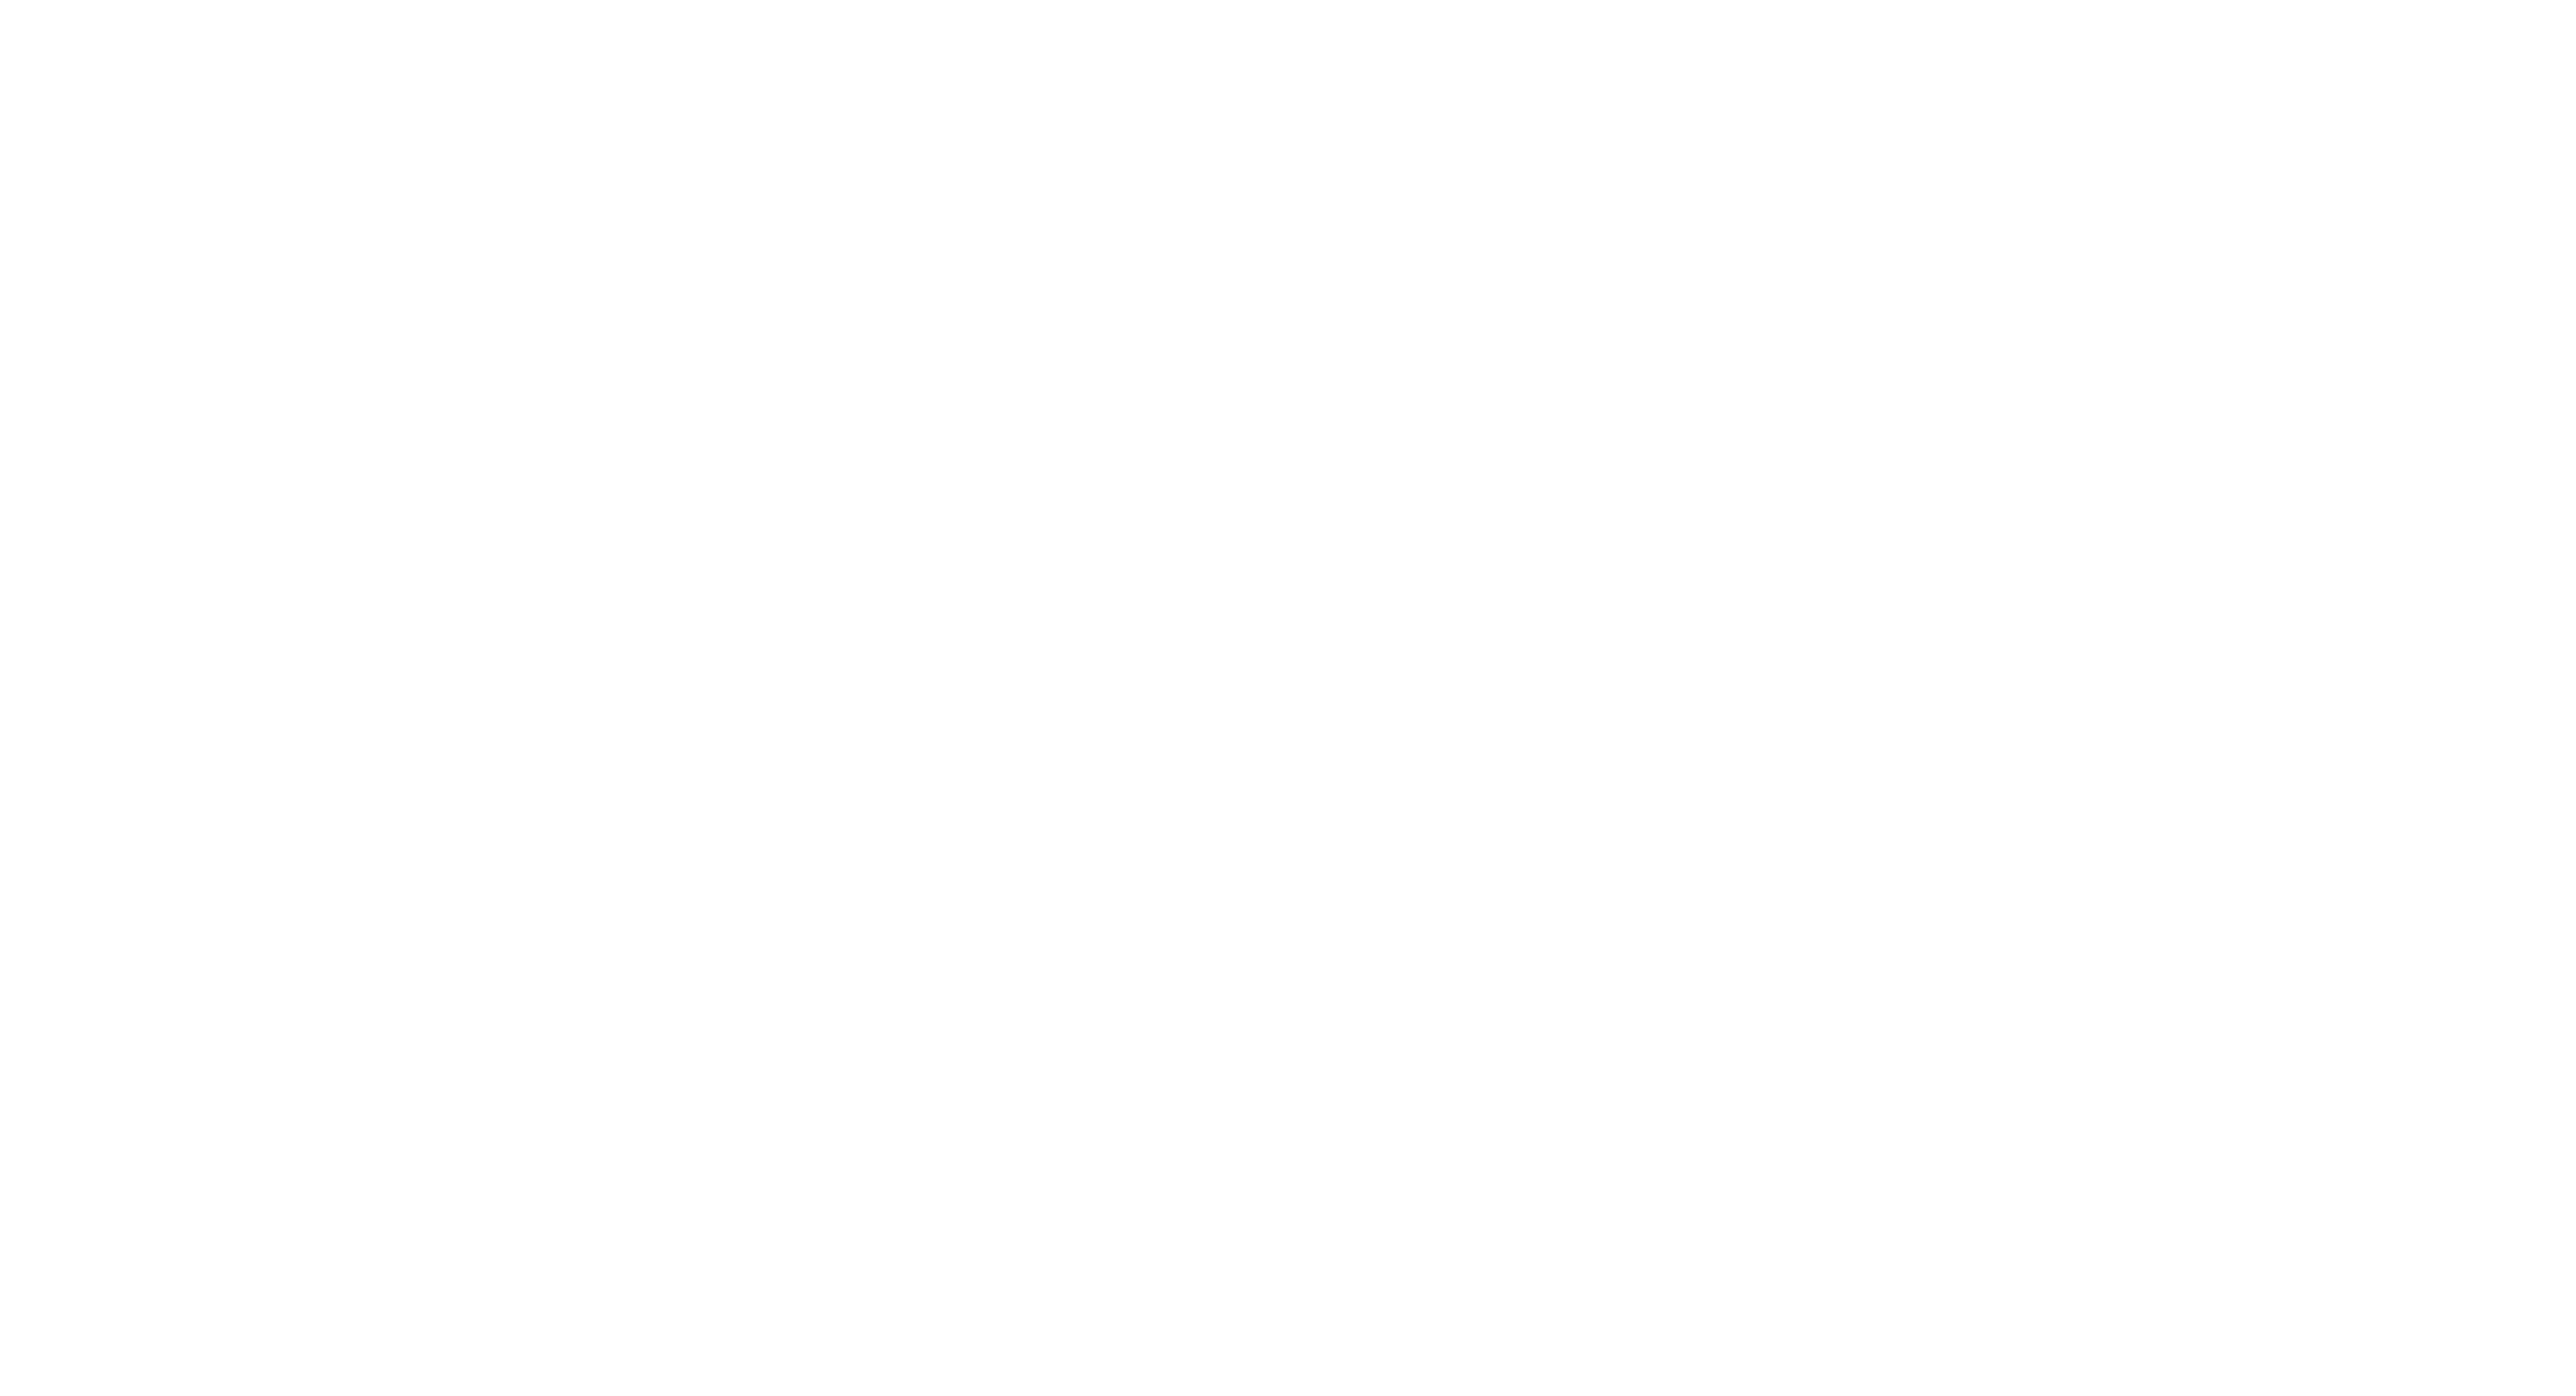 BRRRR Invest Lending